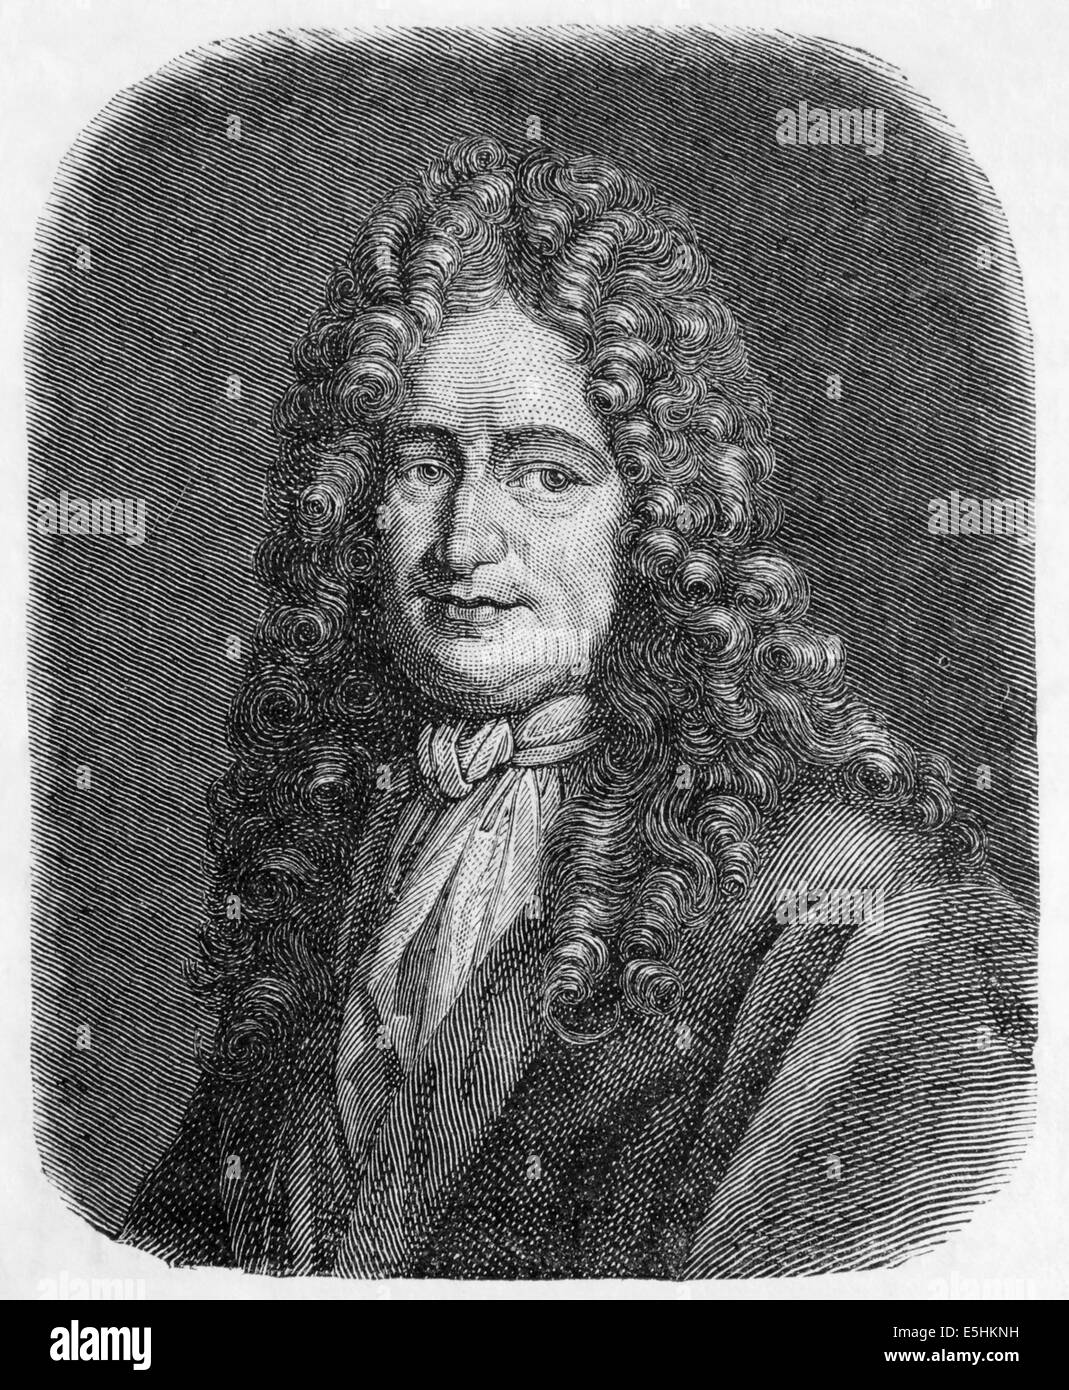 Gottfried Wilhelm von Leibniz(1646 -1716). German mathematician and philosopher. Engraving. Universal History. 19th century. Stock Photo